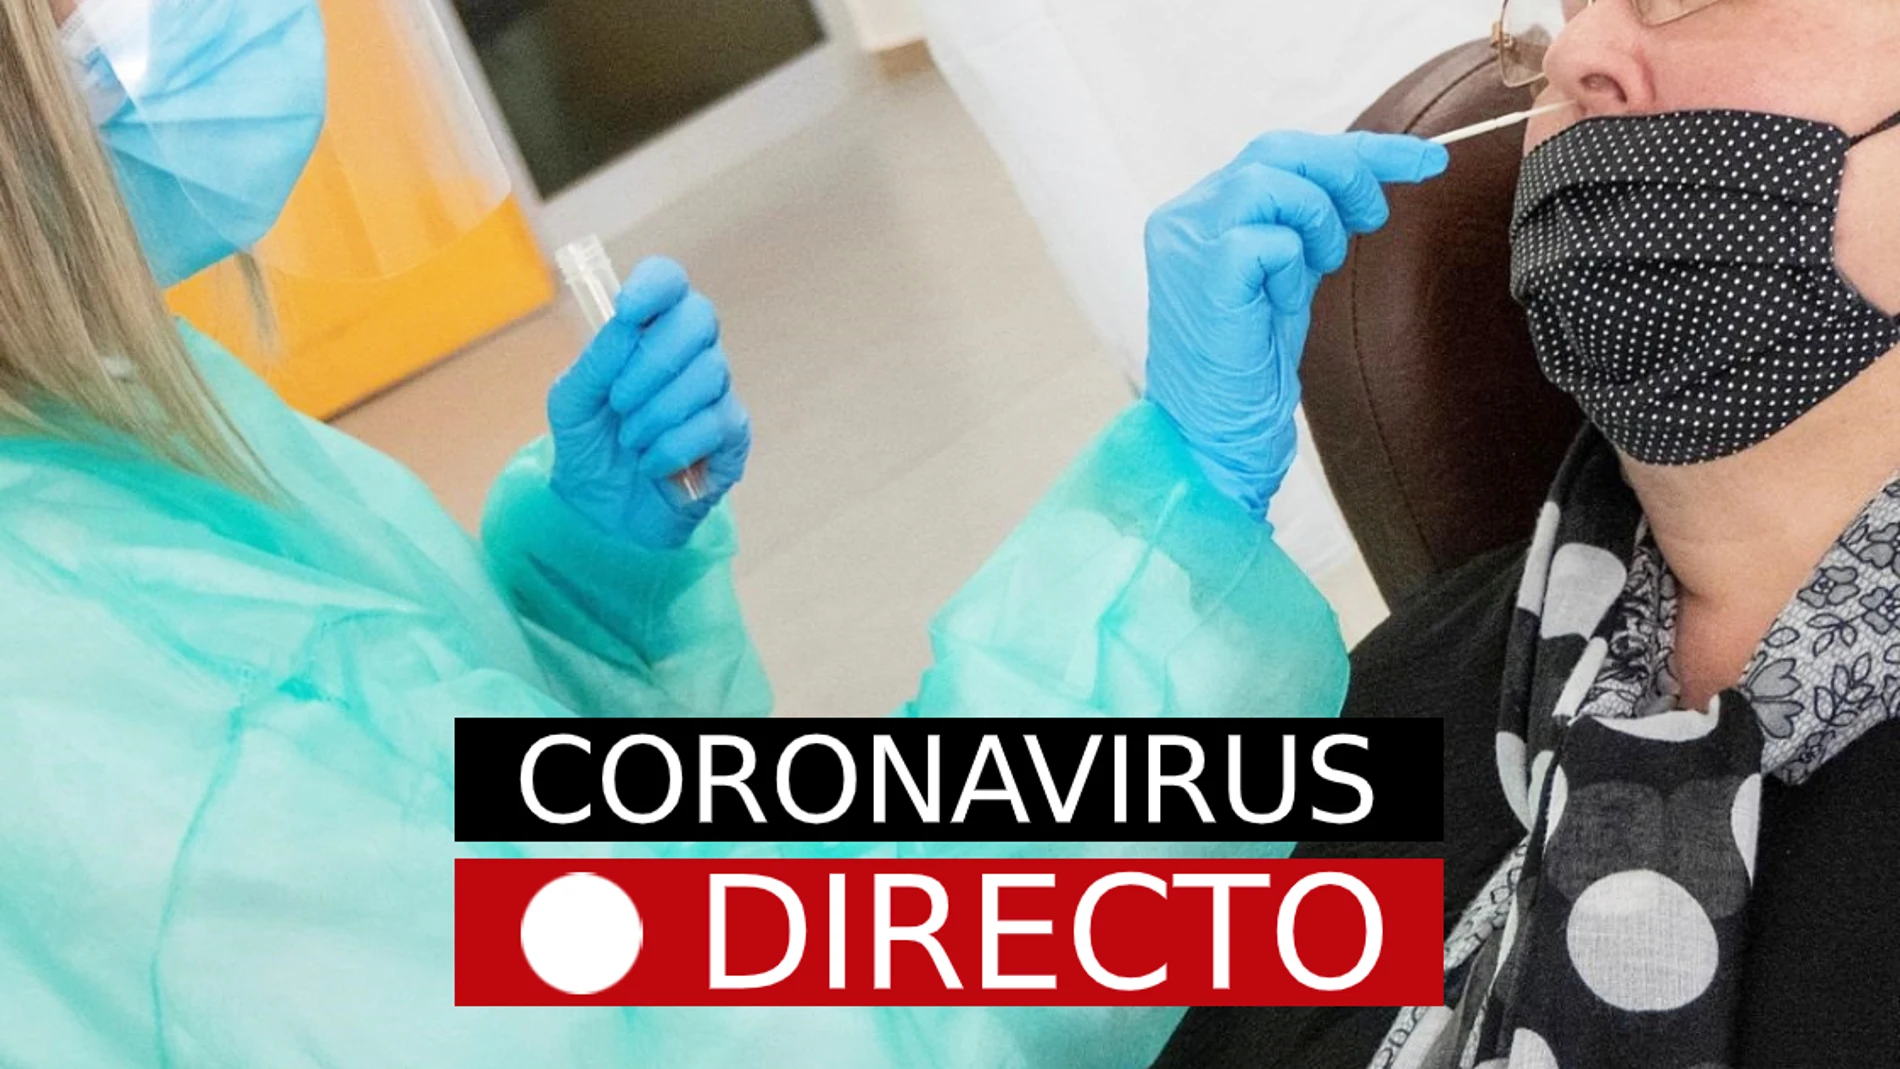 COVID-19, hoy | Medidas por el Coronavirus en España, noticias y restricciones, en directo